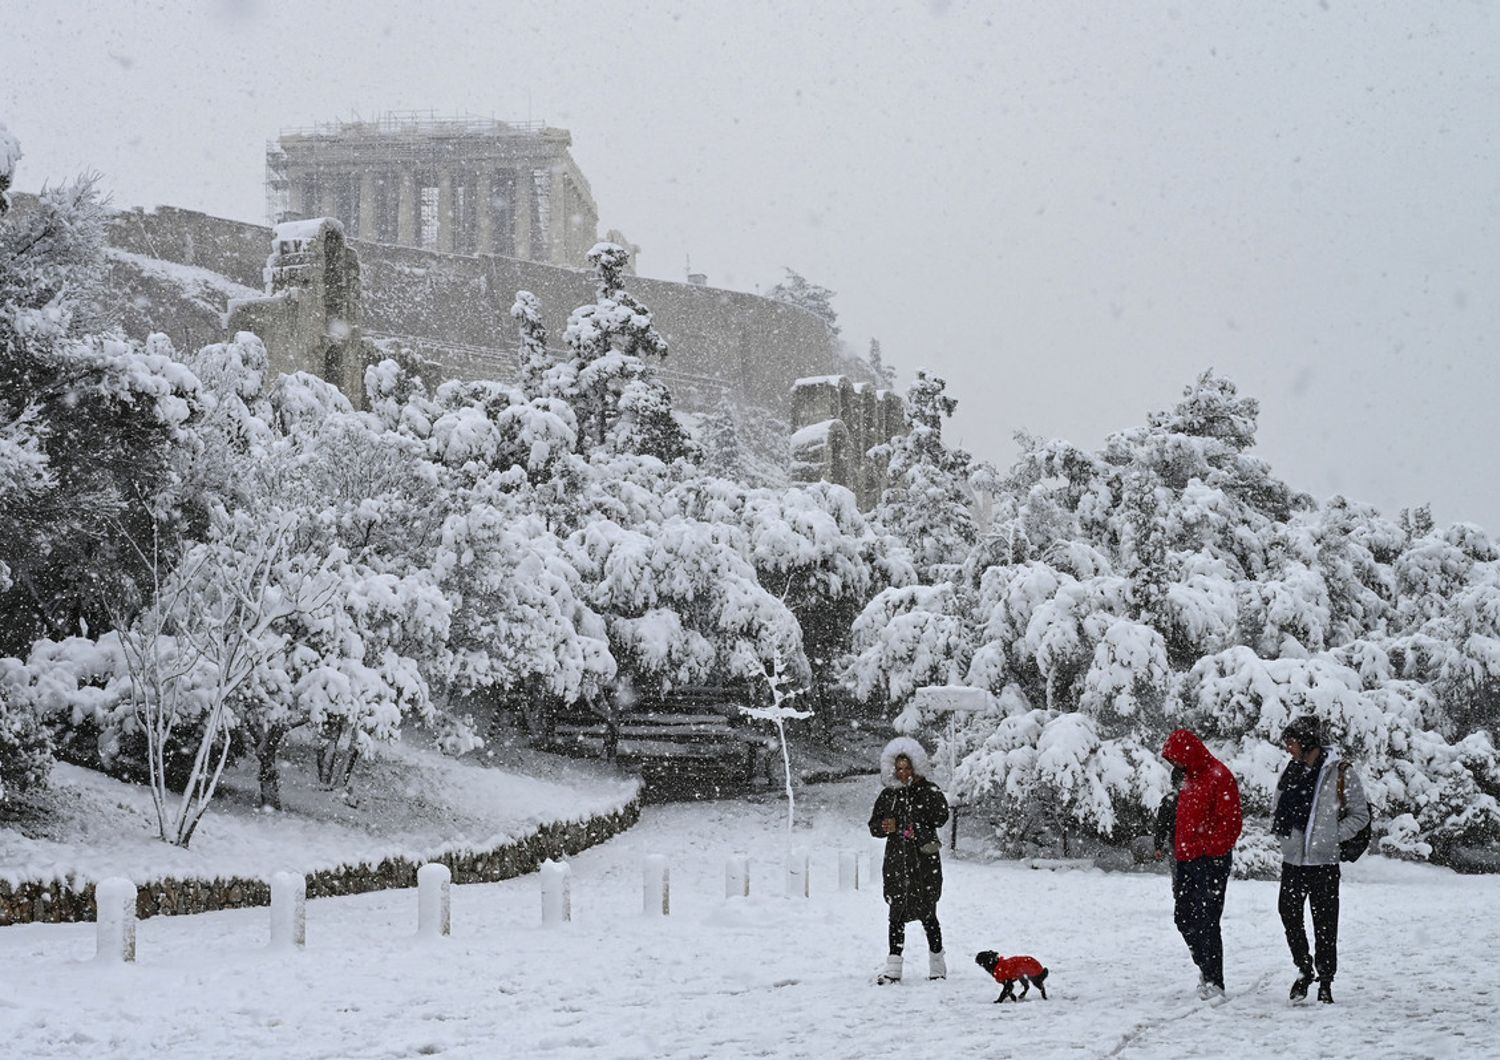 L'Acropoli di Atene imbiancata dalla neve